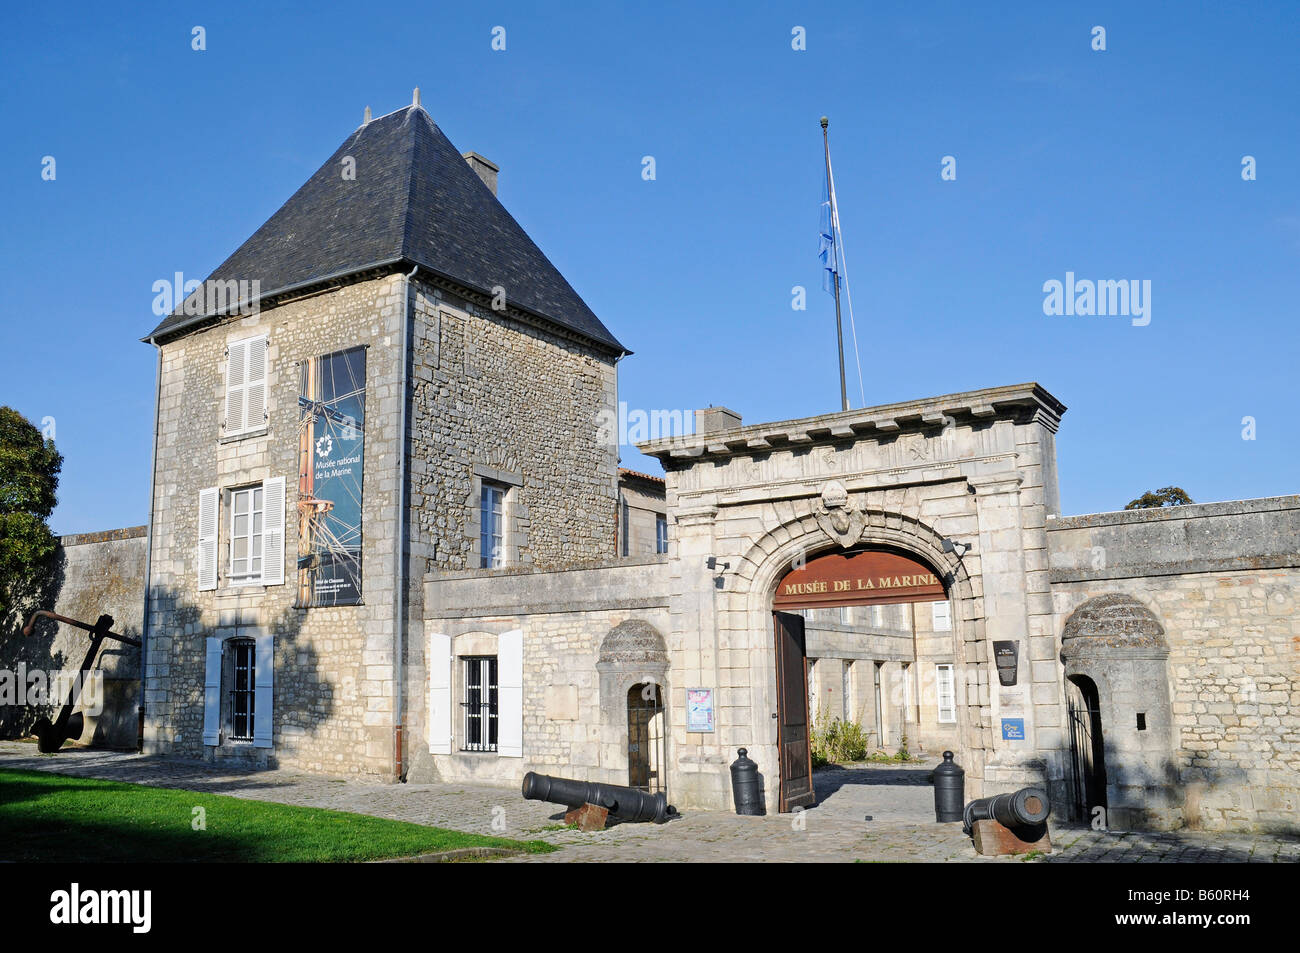 Arsenal Maritim, Marine Museum, maritine museum, Rochefort, Poitou Charentes, France, Europe Stock Photo